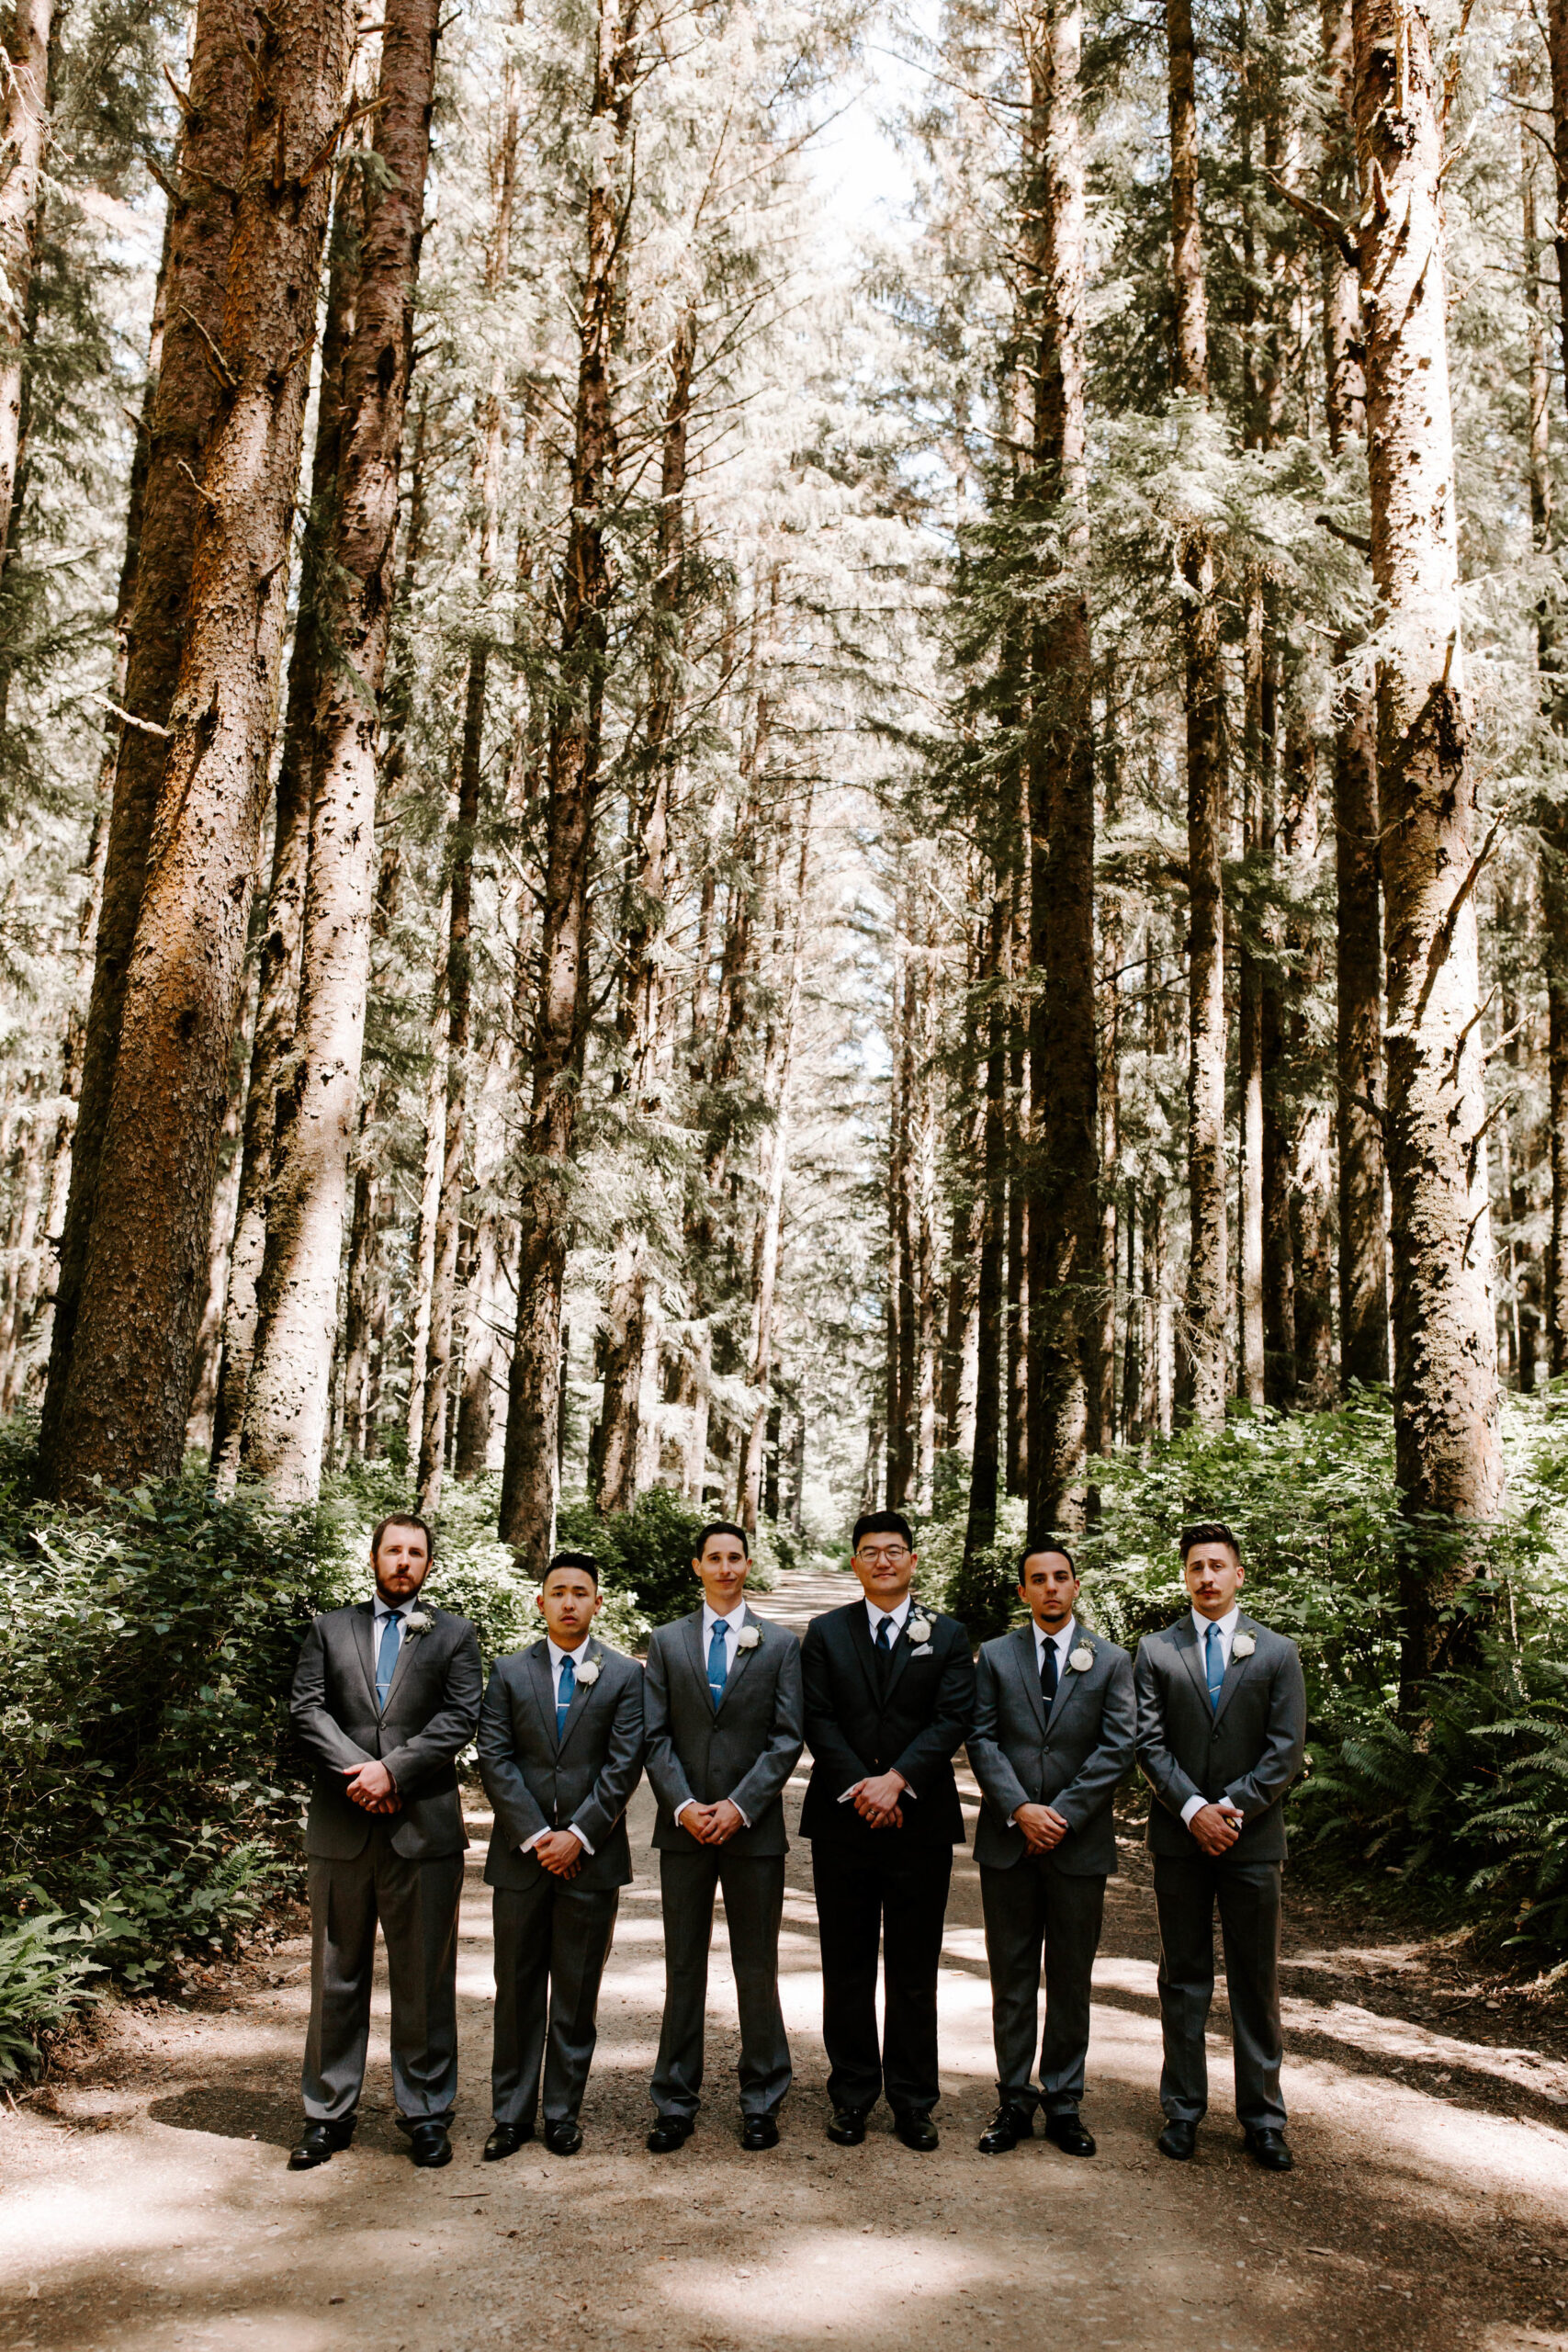 Oregon Wedding Photographer | Groomsmen Style | Rustic Bloom Photography